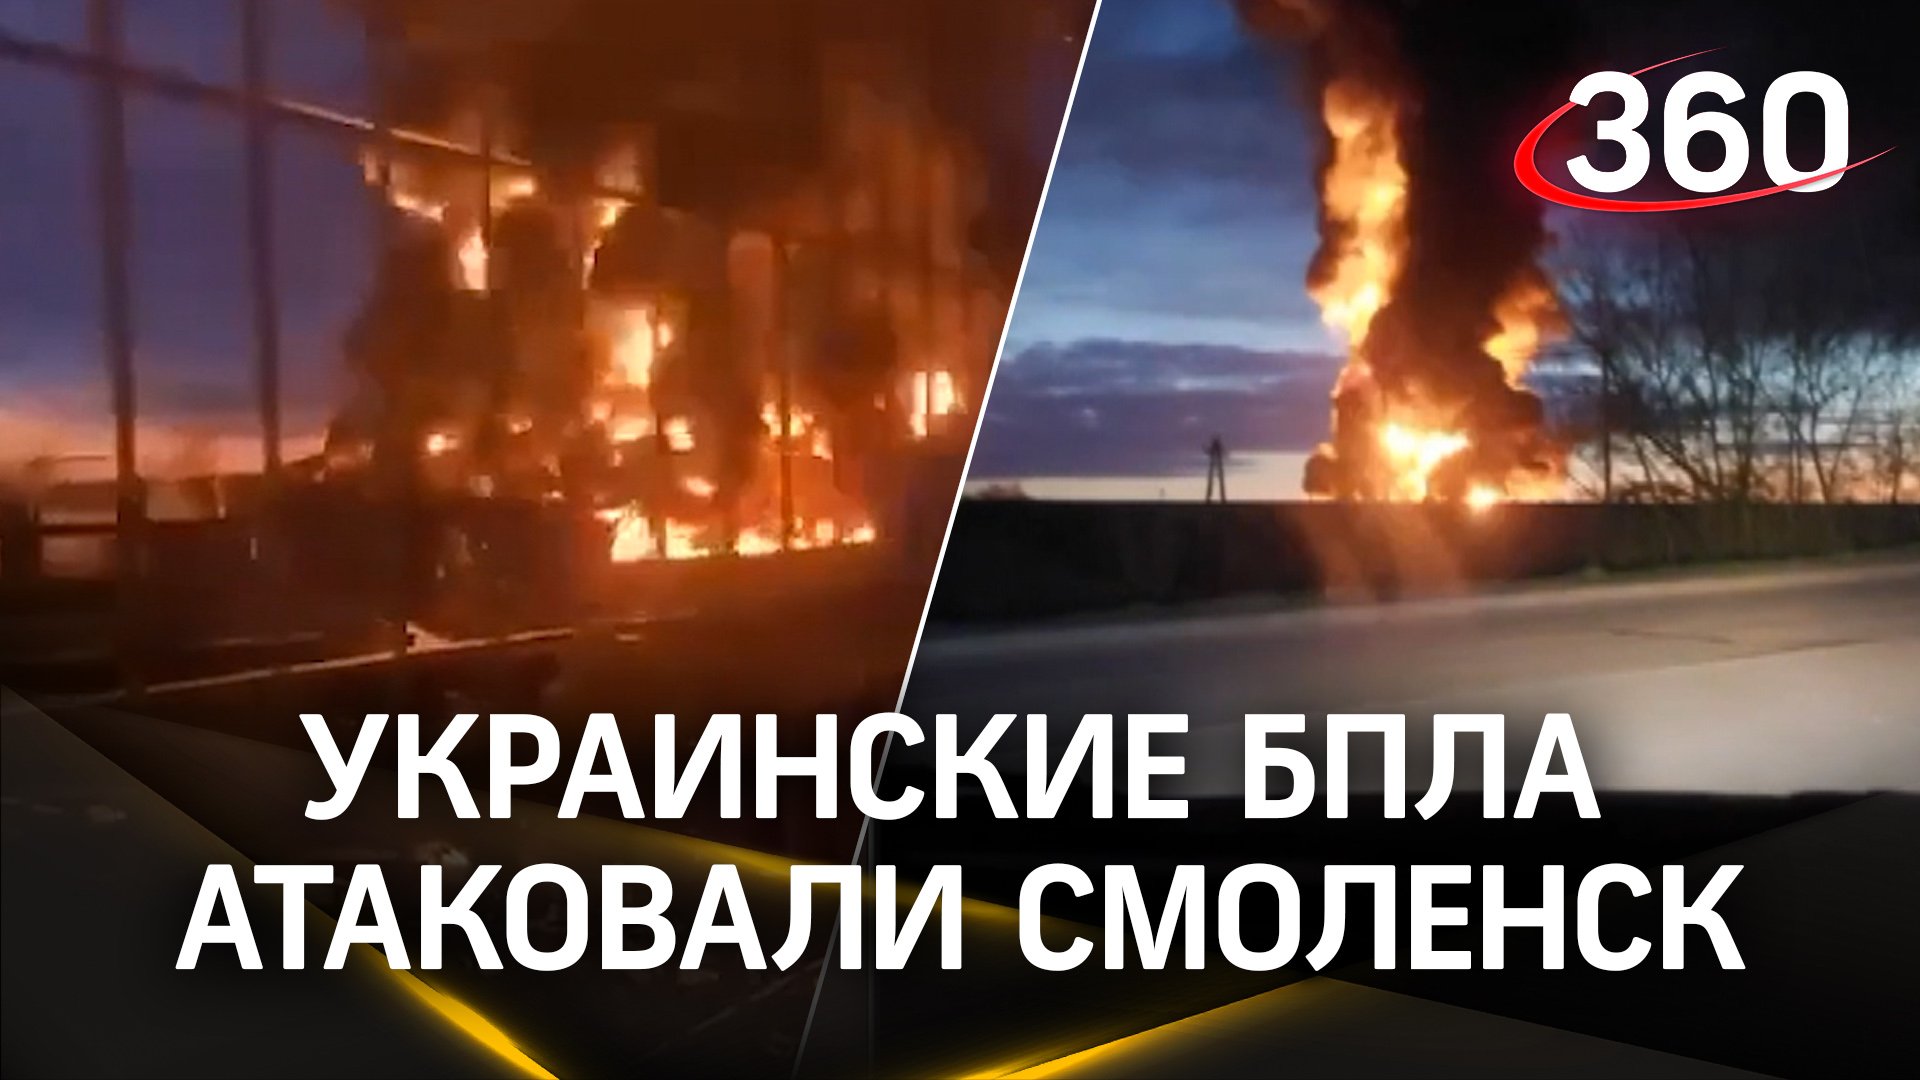 Украинские БПЛА атаковали Смоленск: в области сразу несколько пожаров